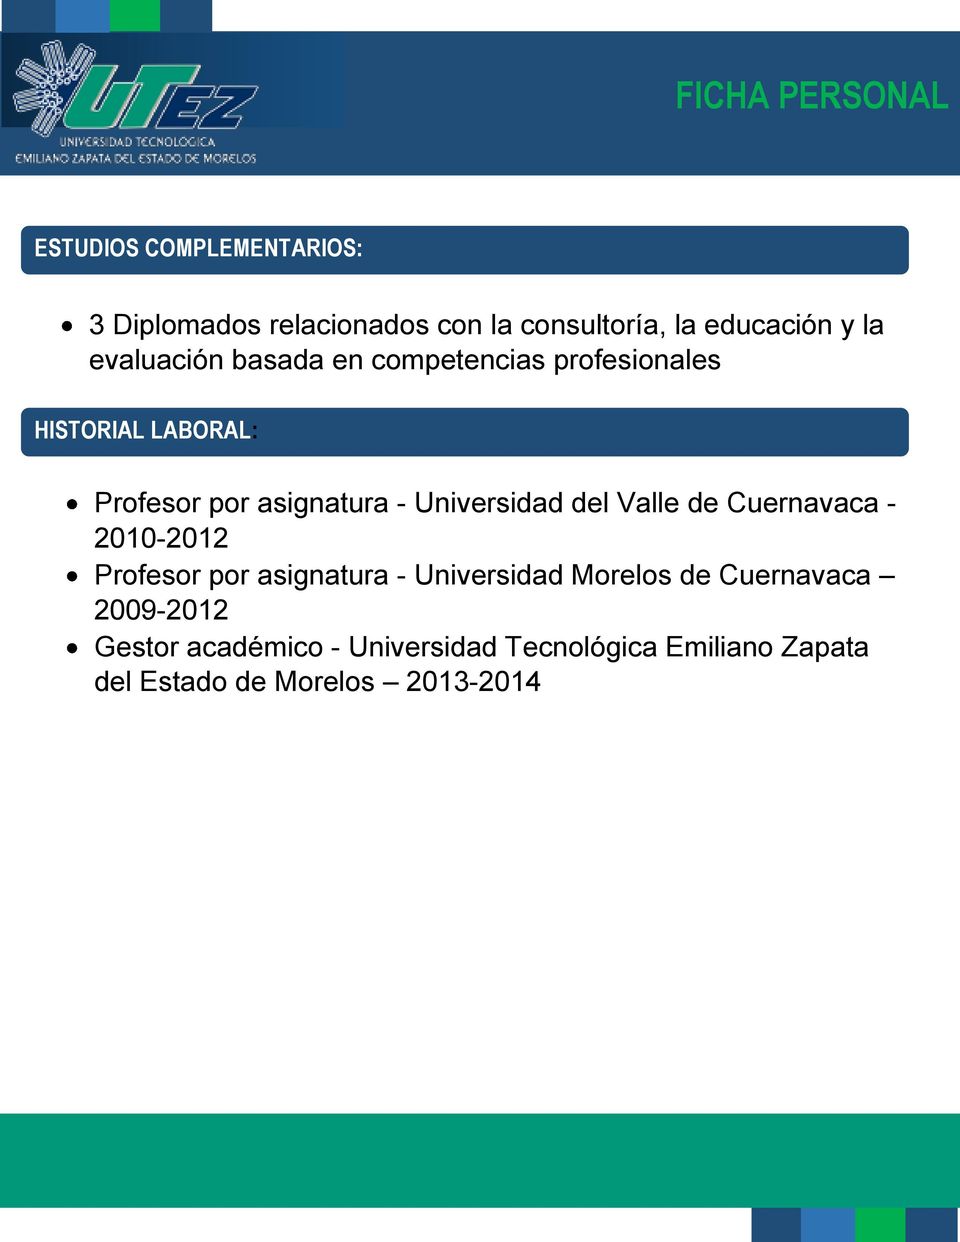 Universidad del Valle de Cuernavaca - 2010-2012 Profesor por asignatura - Universidad Morelos de